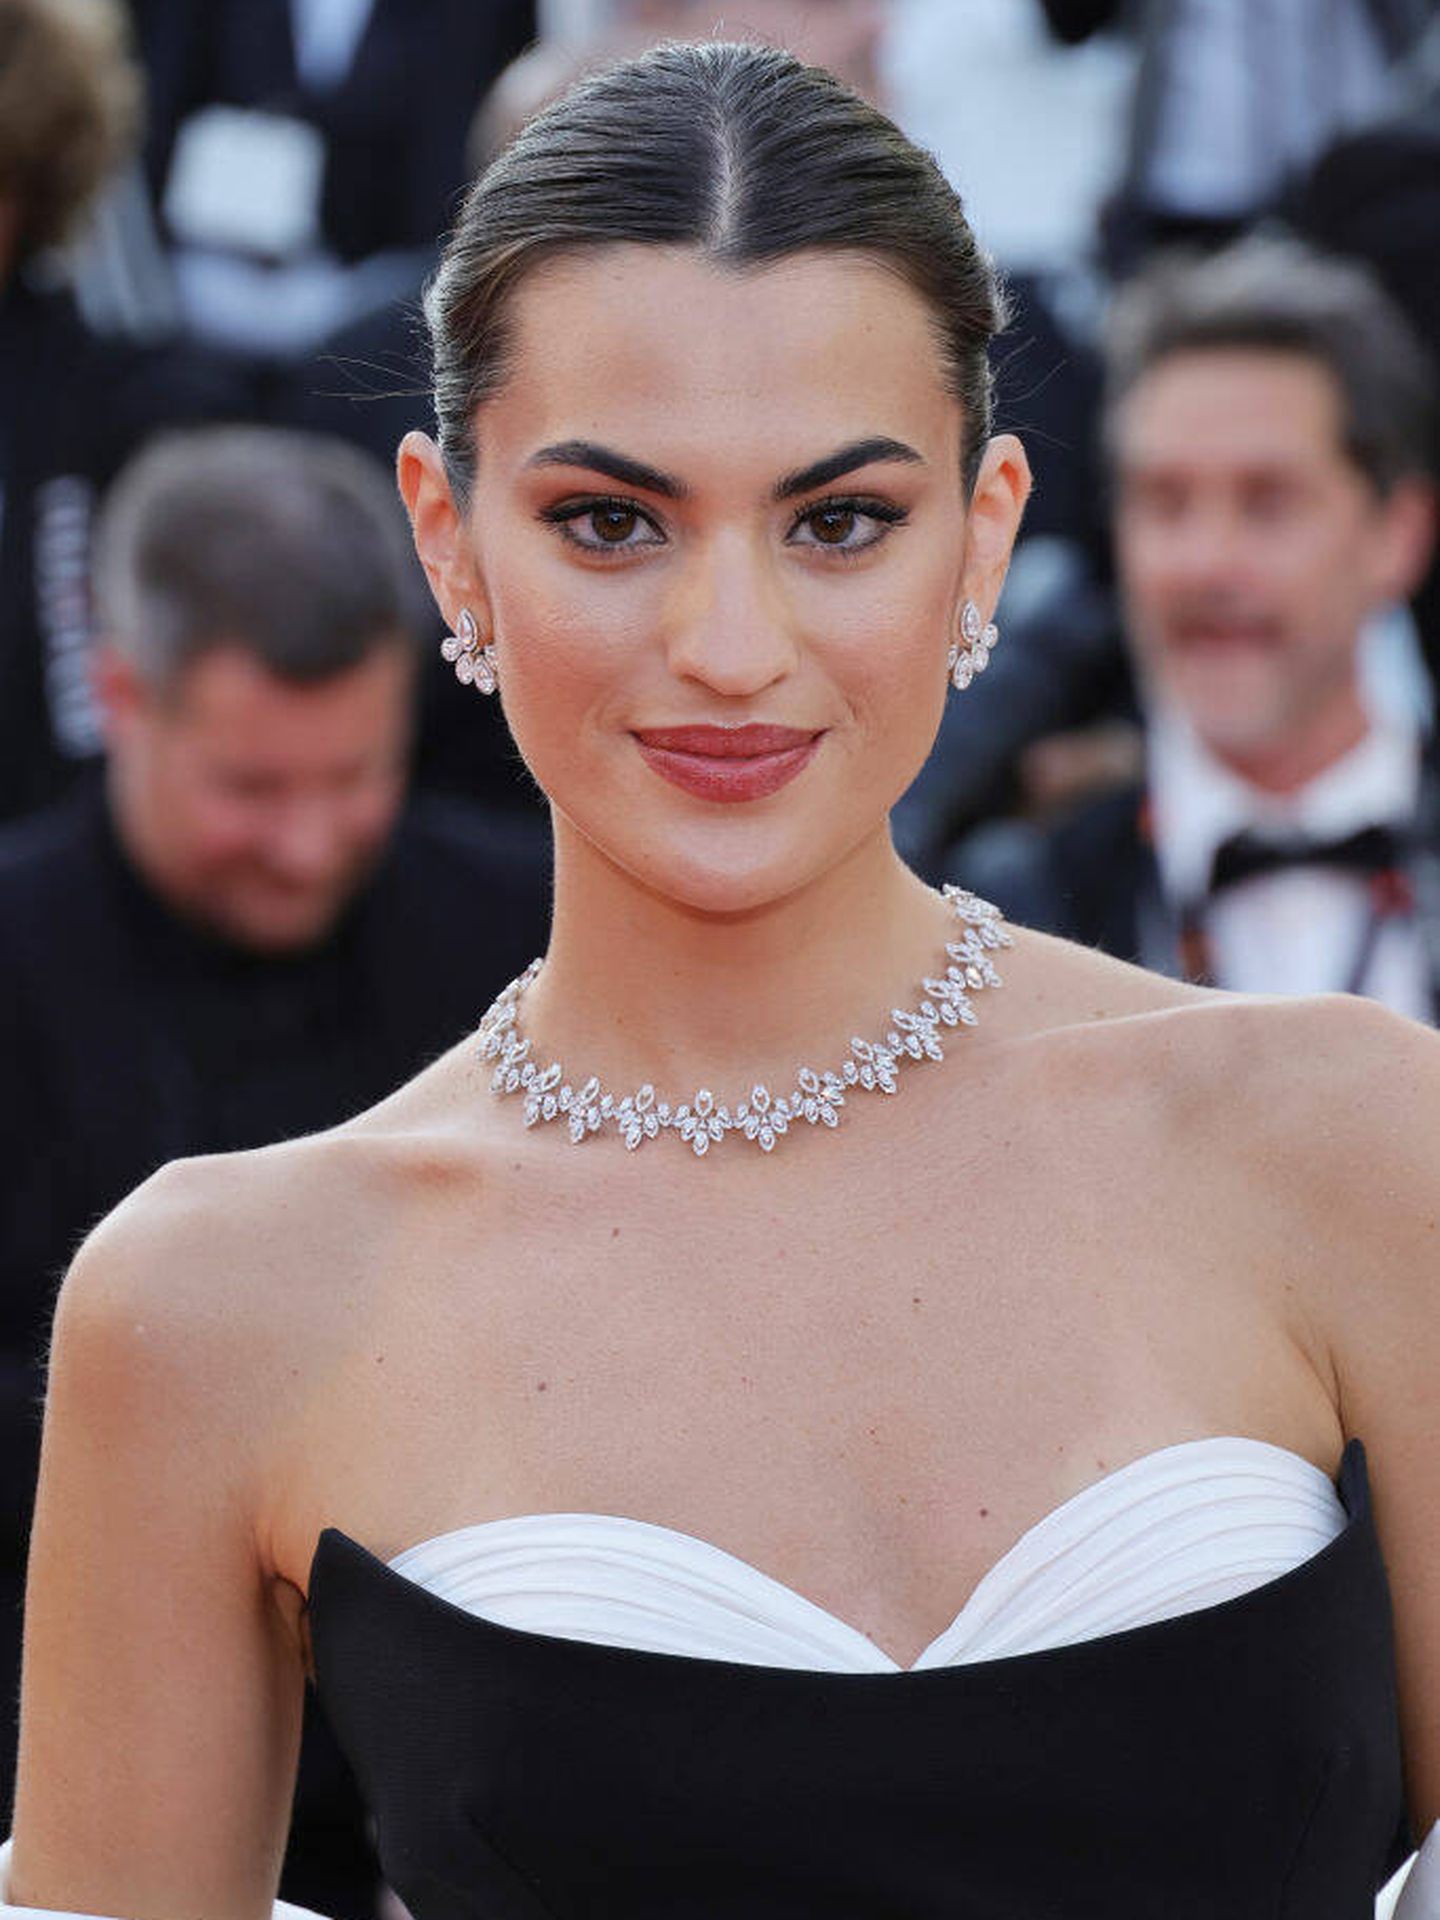 Detalle del maquillaje de Marta Lozano para el Festival de Cannes. (Getty Images)